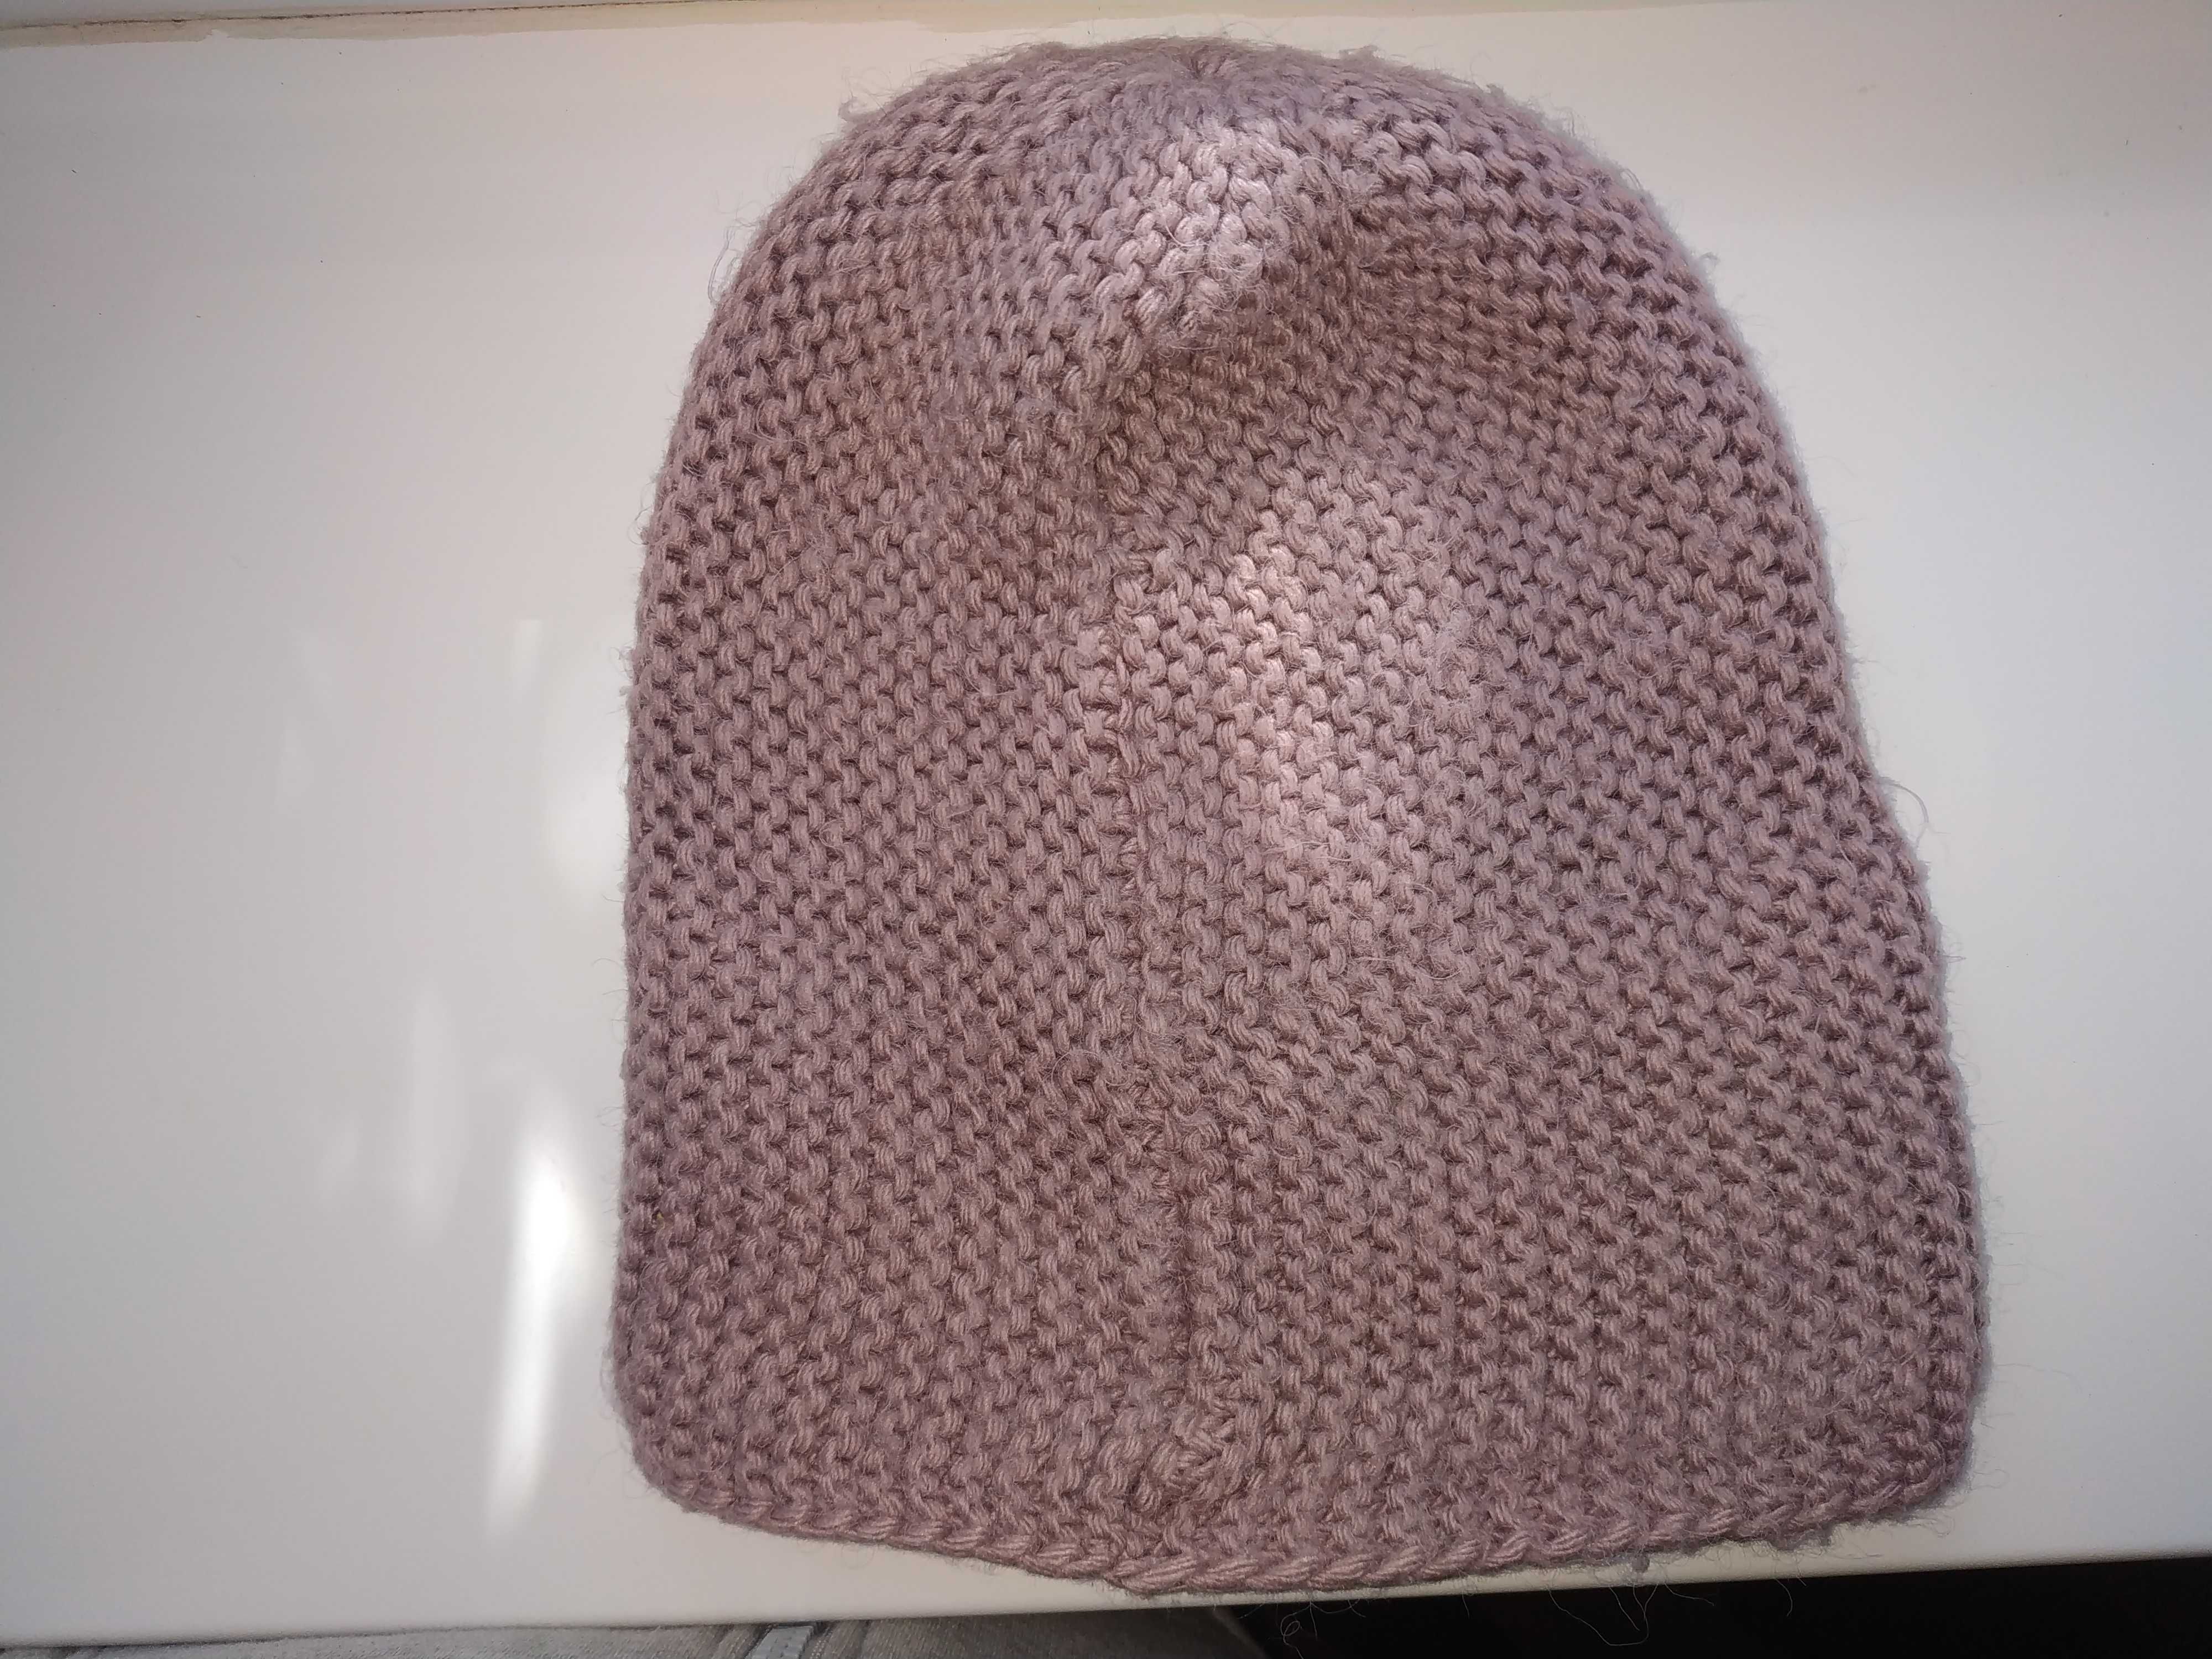 Зимова жіноча шапка